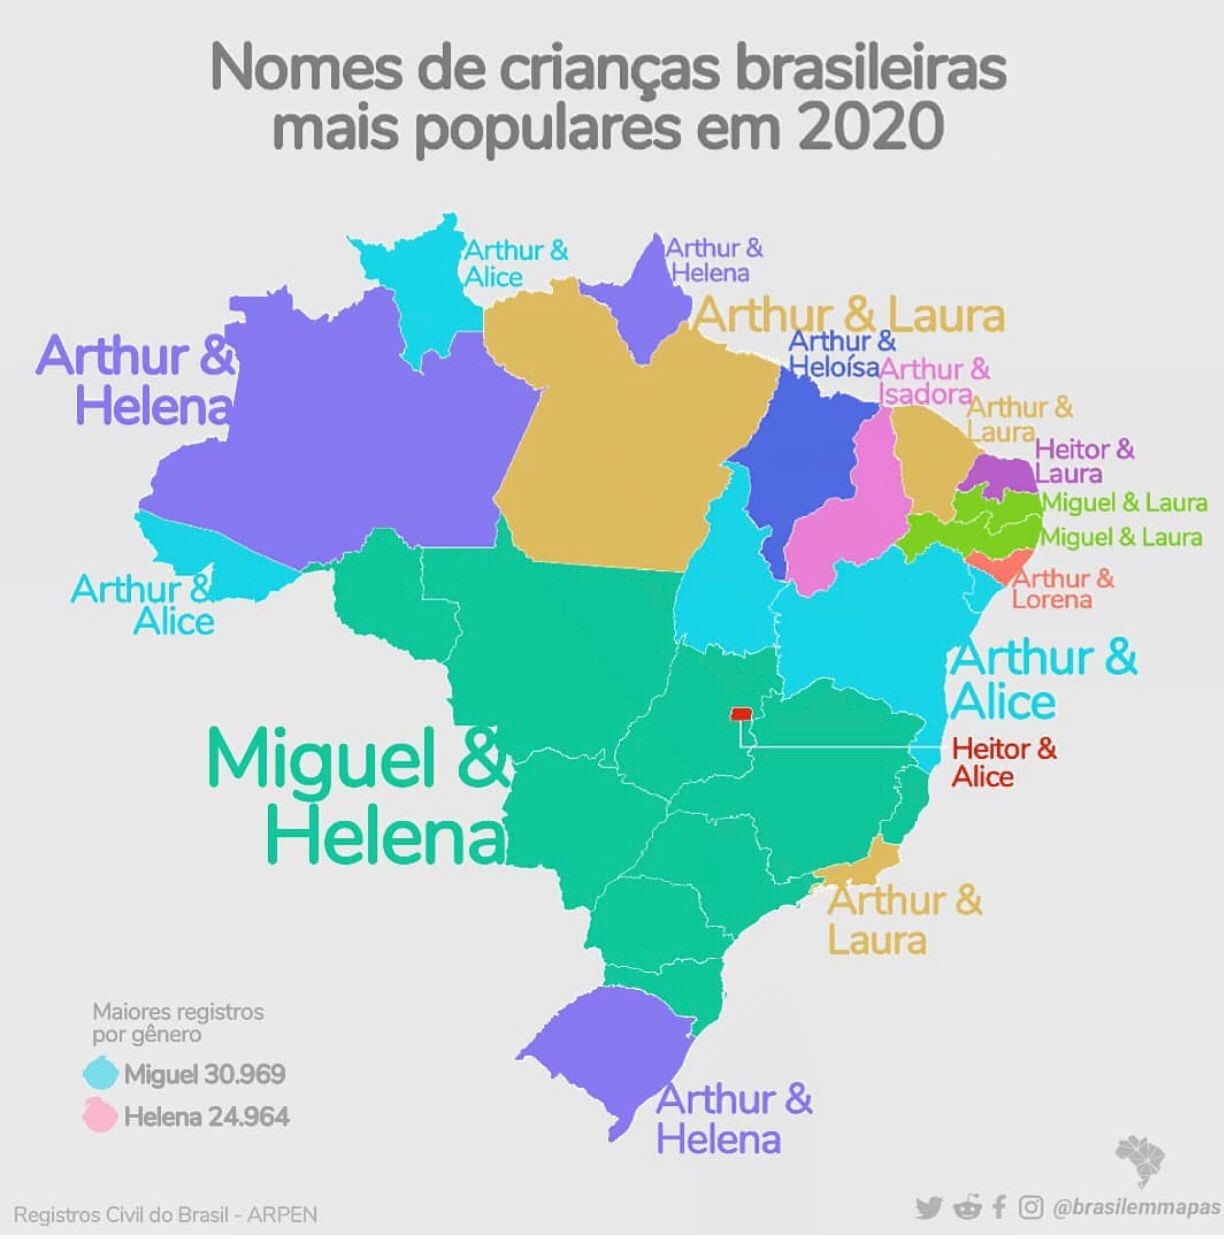 Mapa elaborado pelo Instagram @brasilemmapas (Foto: Reprodução no Instagram)